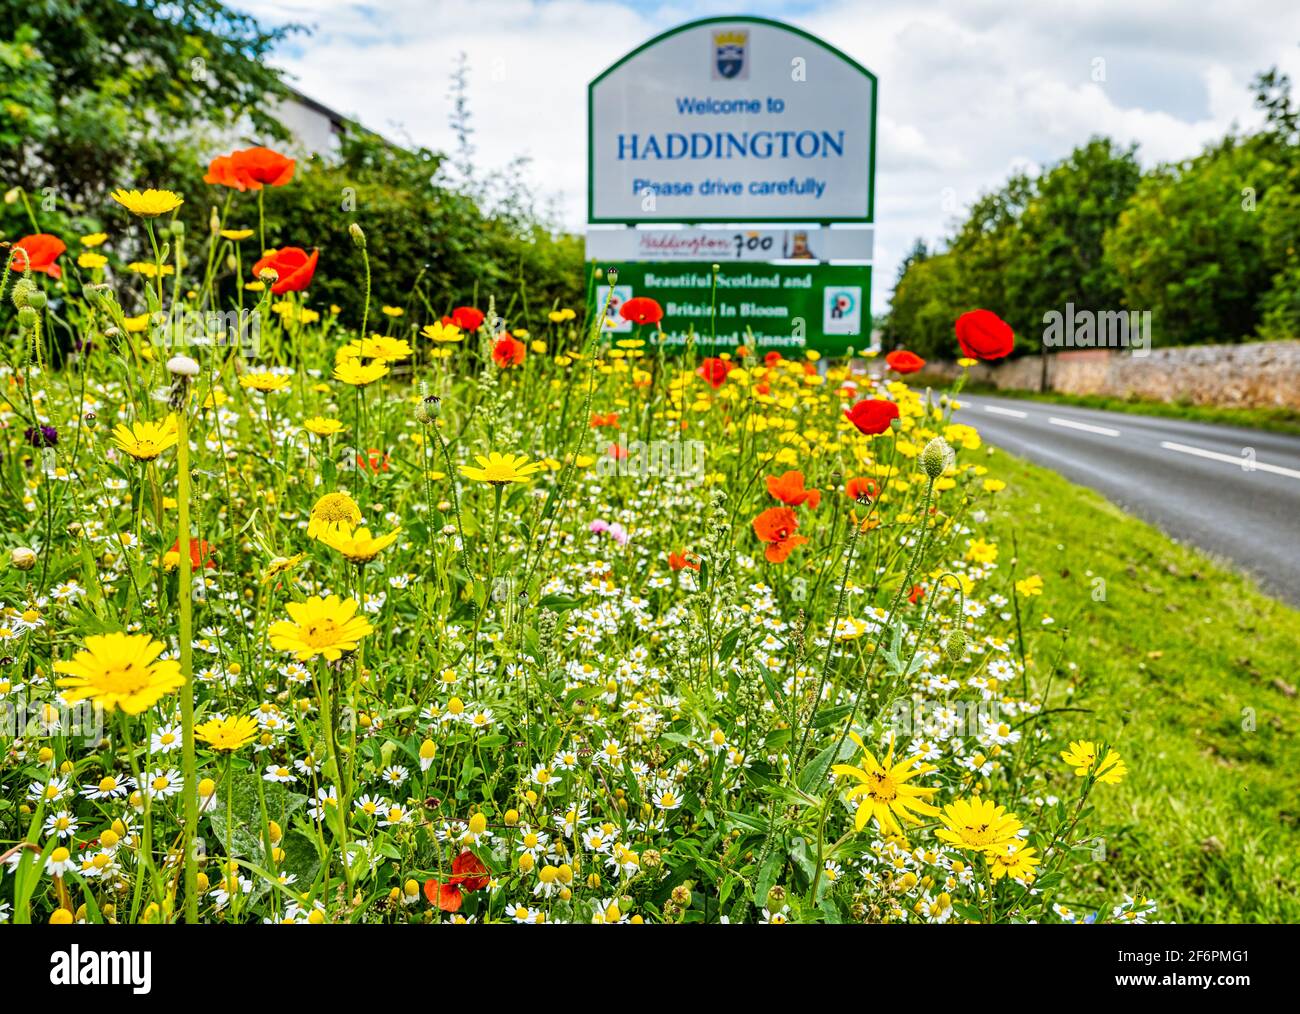 Fleurs sauvages sous le soleil d'été au bord de la route au panneau de la ville, avec le panneau de bienvenue de la ville de Haddington, East Lothian, Écosse, Royaume-Uni Banque D'Images